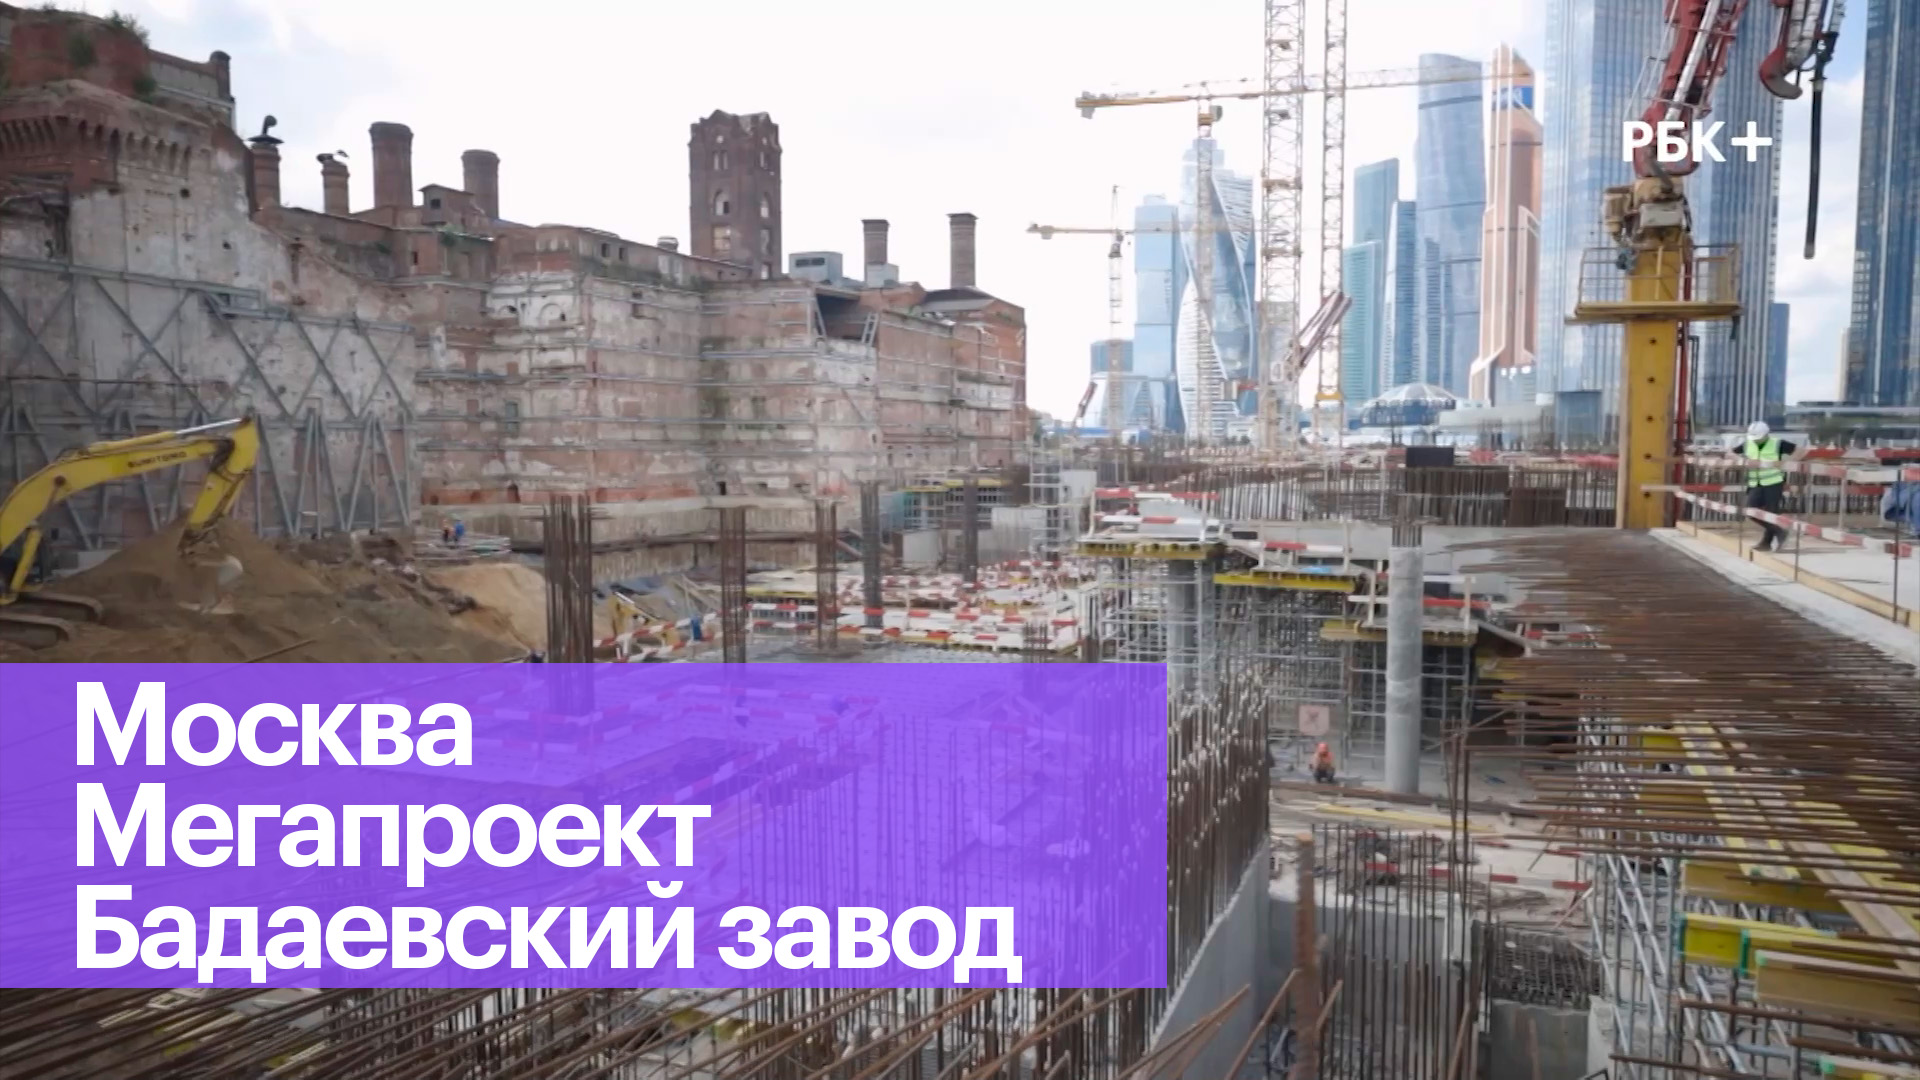 Как продвигается строительство на месте бывшего Бадаевского завода